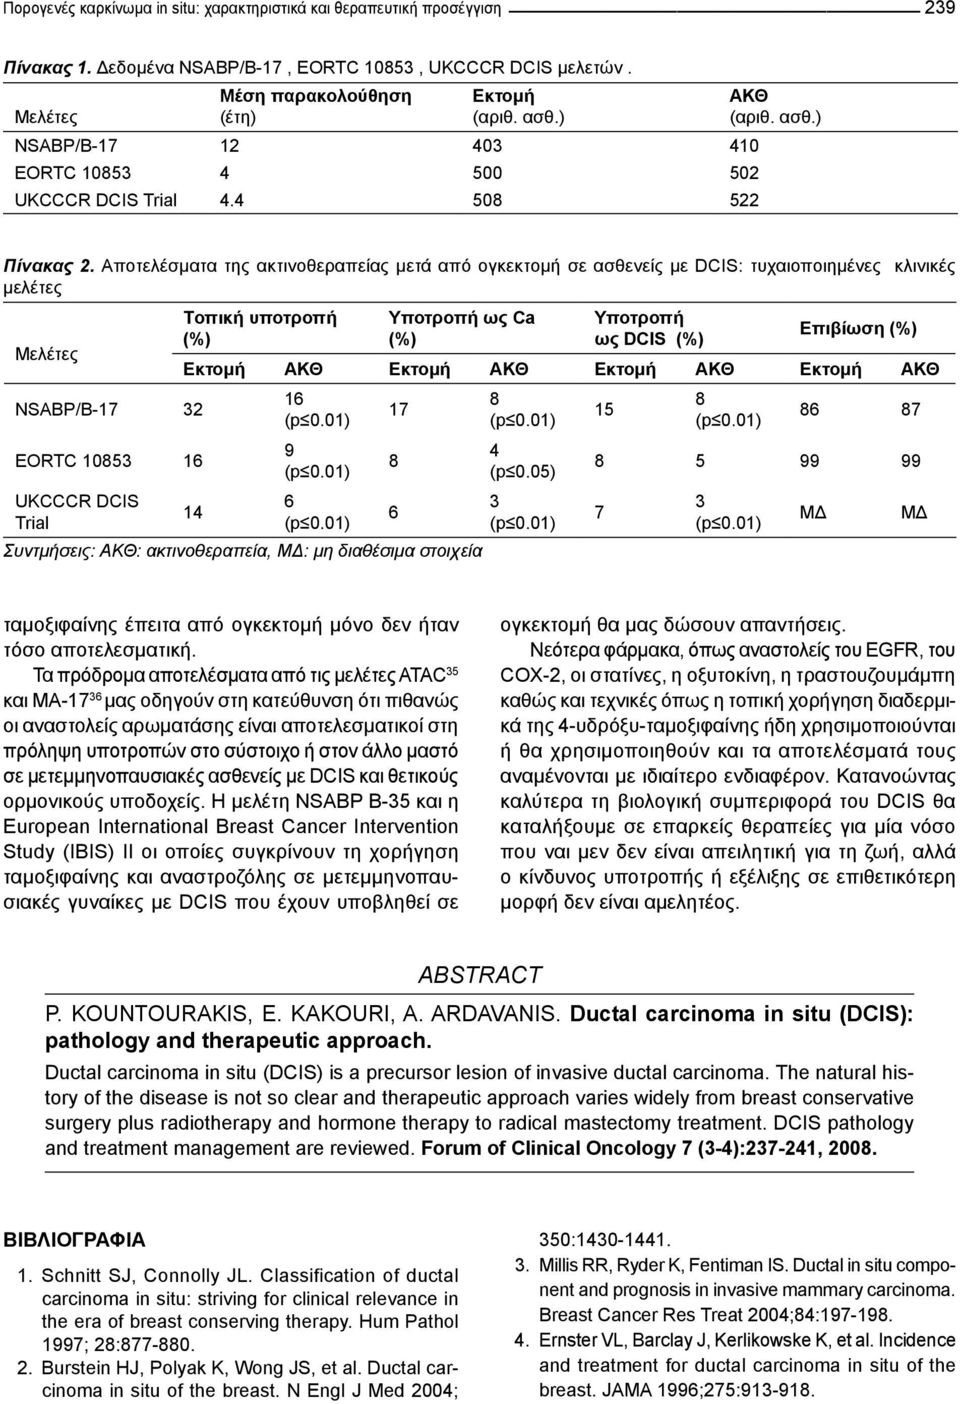 Αποτελέσματα της ακτινοθεραπείας μετά από ογκεκτομή σε ασθενείς με DCIS: τυχαιοποιημένες κλινικές μελέτες Μελέτες NSABP/B-17 32 EORTC 1053 16 UKCCCR DCIS Trial Tοπική υποτροπή (%) Υποτροπή ως Ca (%)